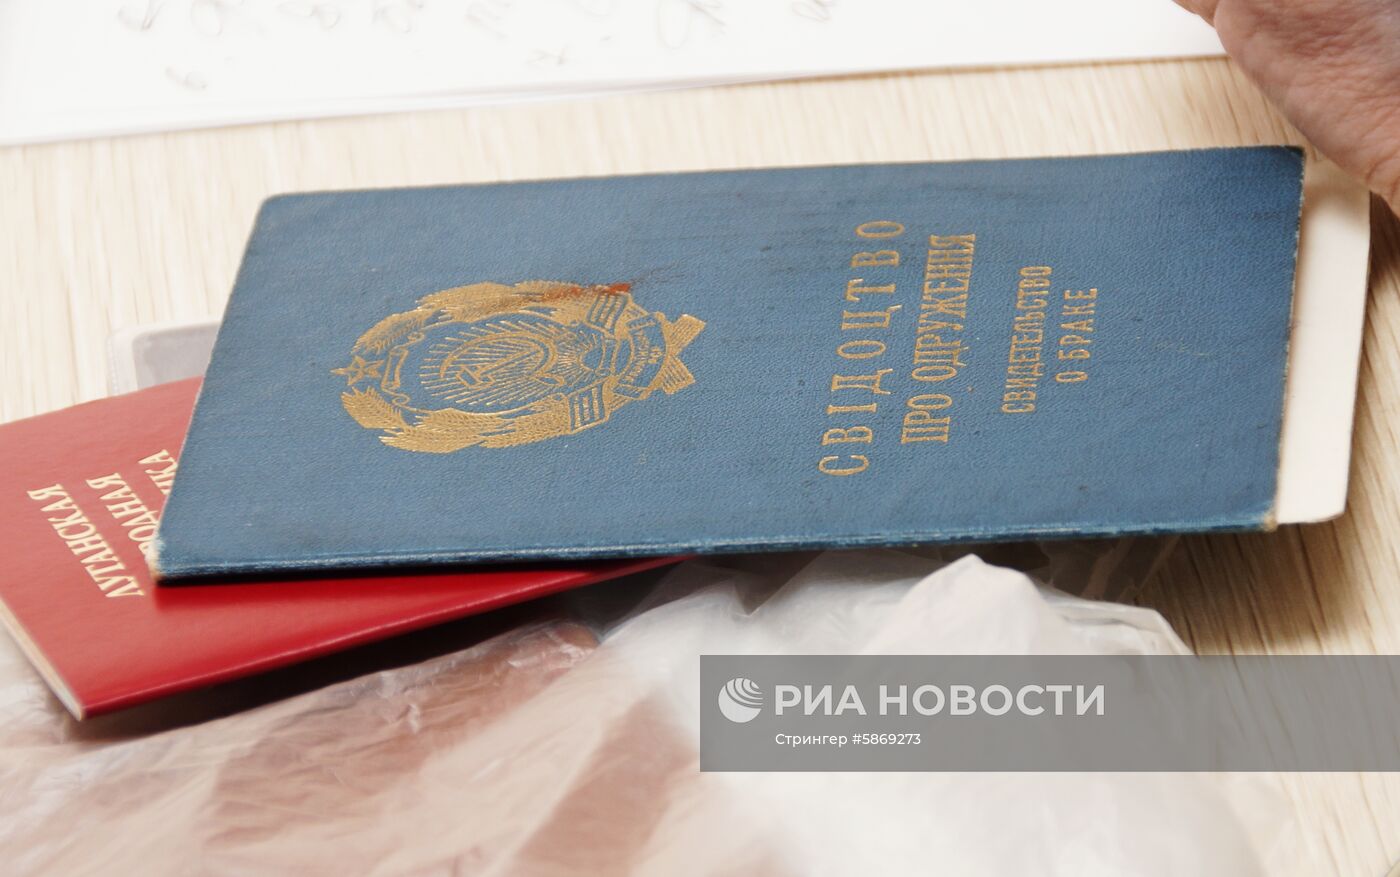 Работа миграционной службы по приёму документов на паспорт РФ в Луганске